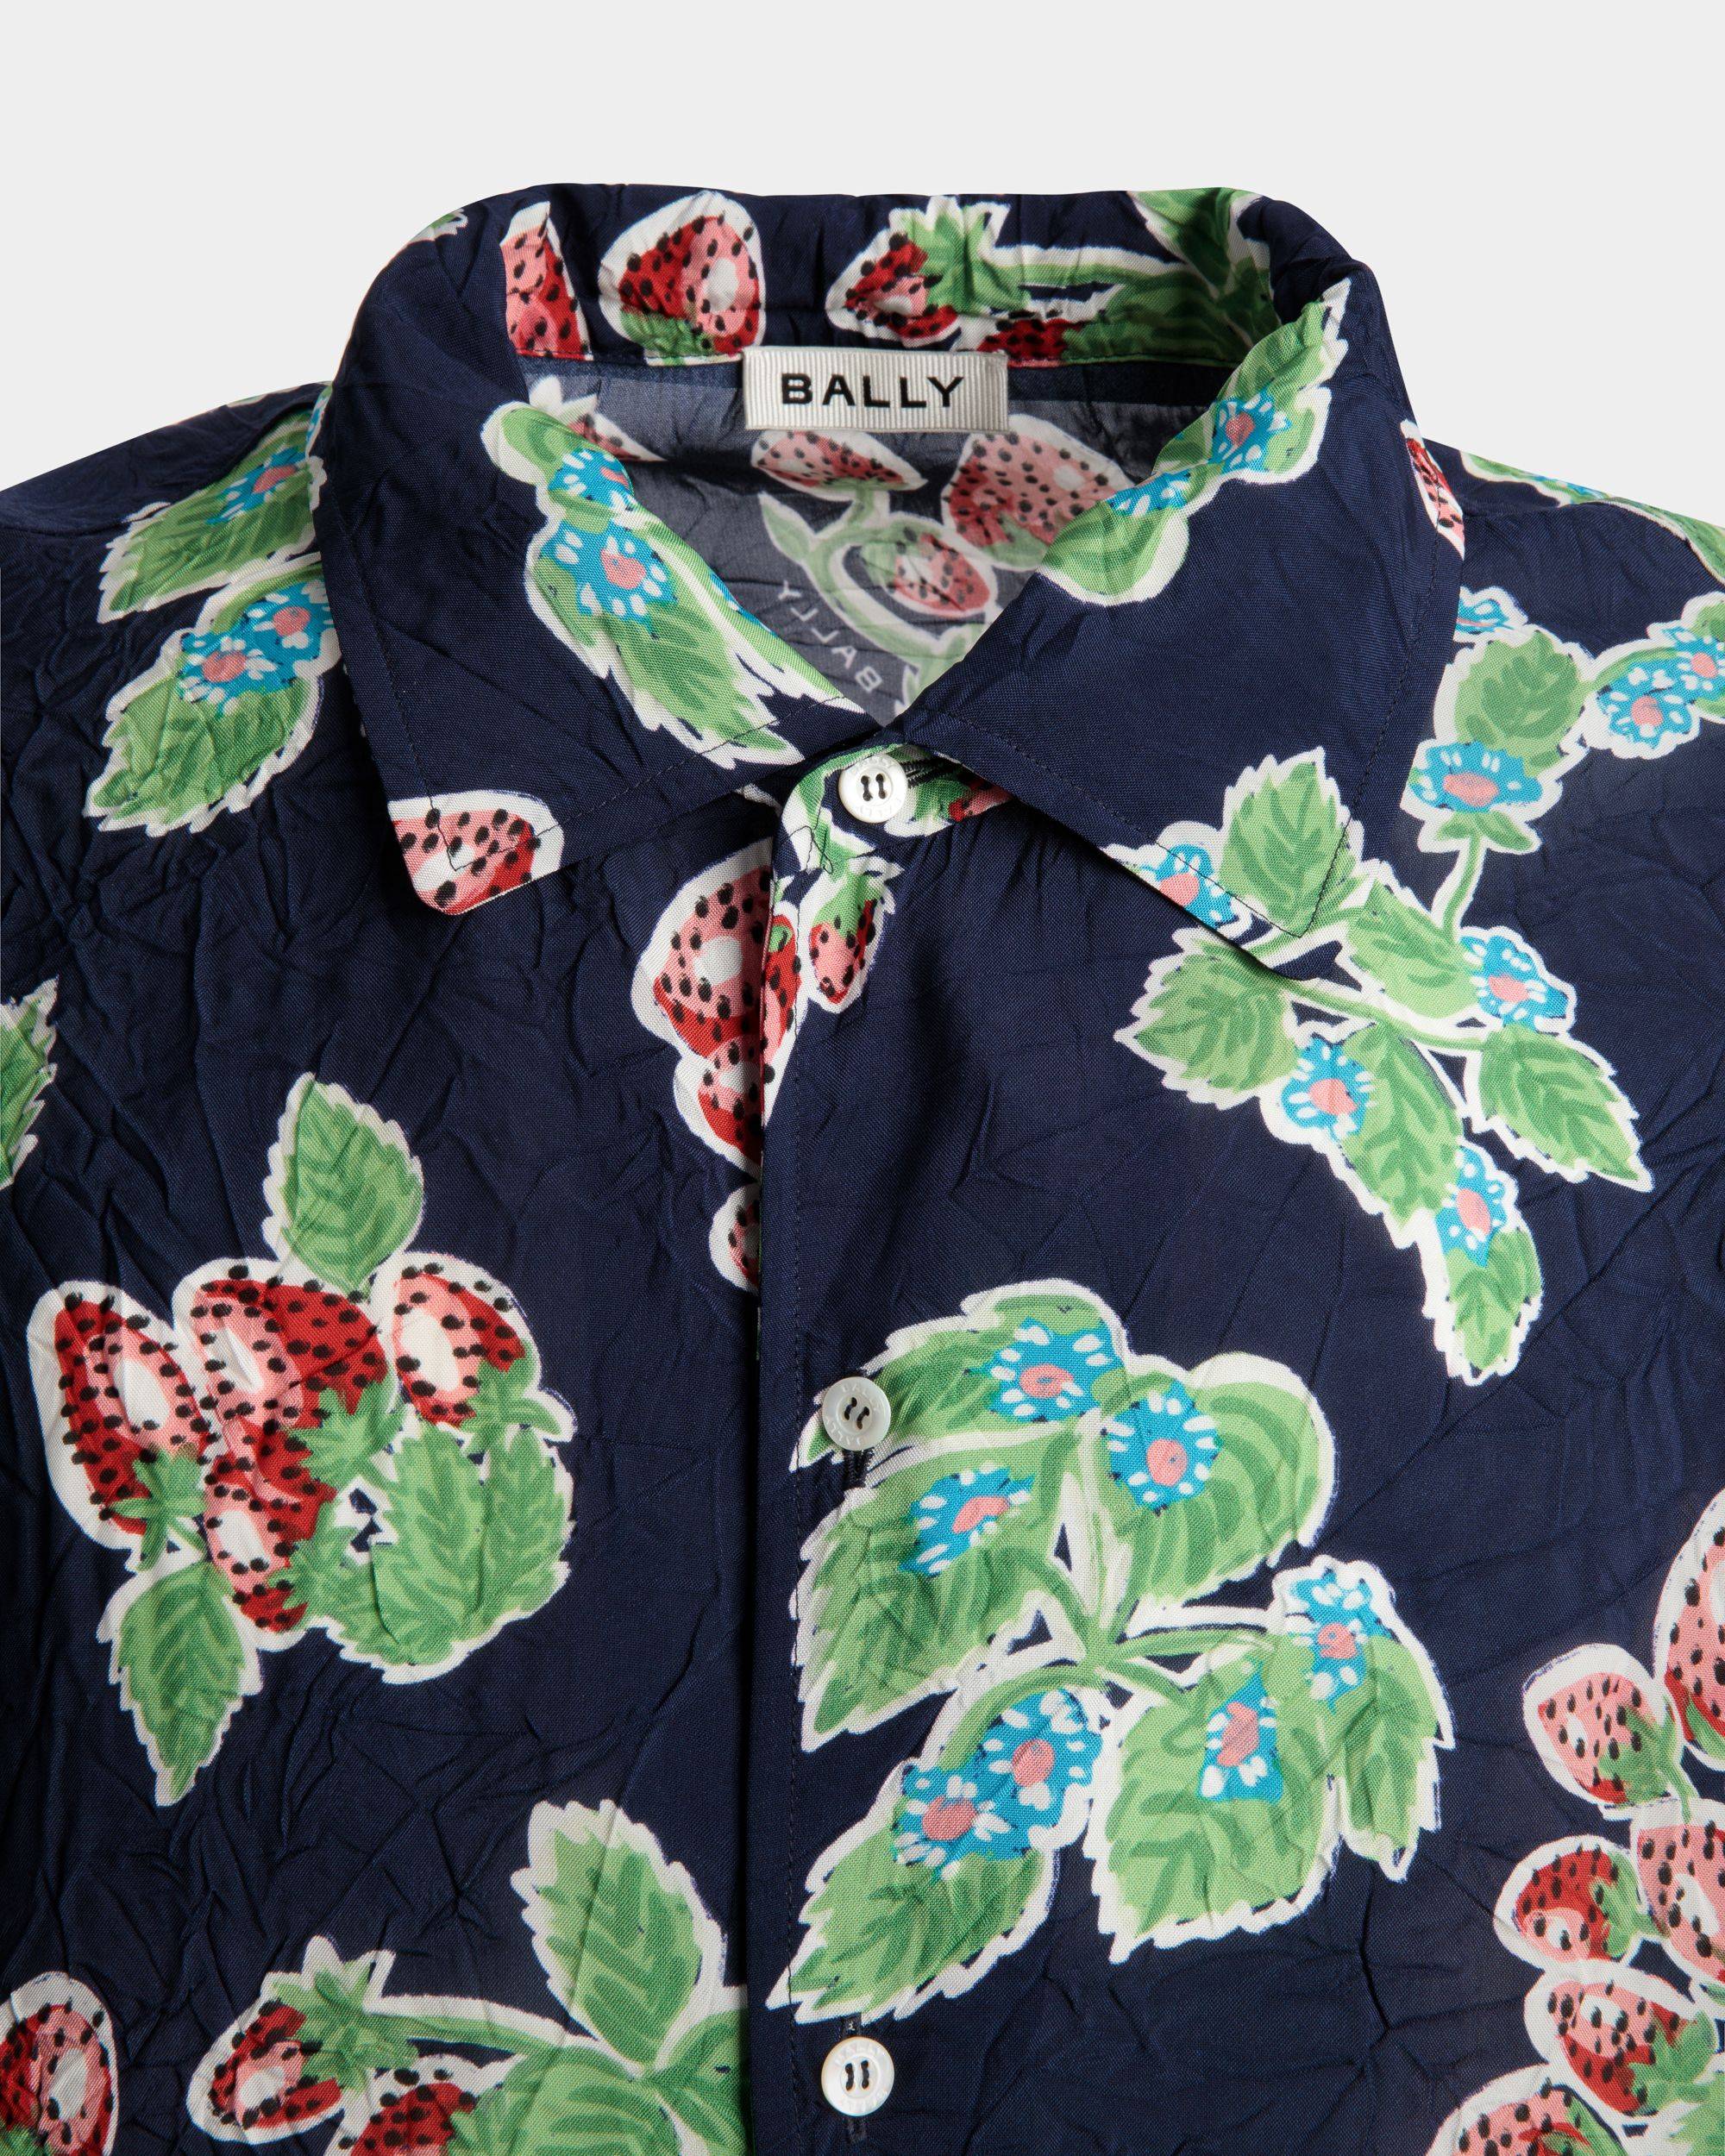 Bedrucktes Herrenhemd aus fließender Popeline in Strawberry | Bally | Model getragen Detail